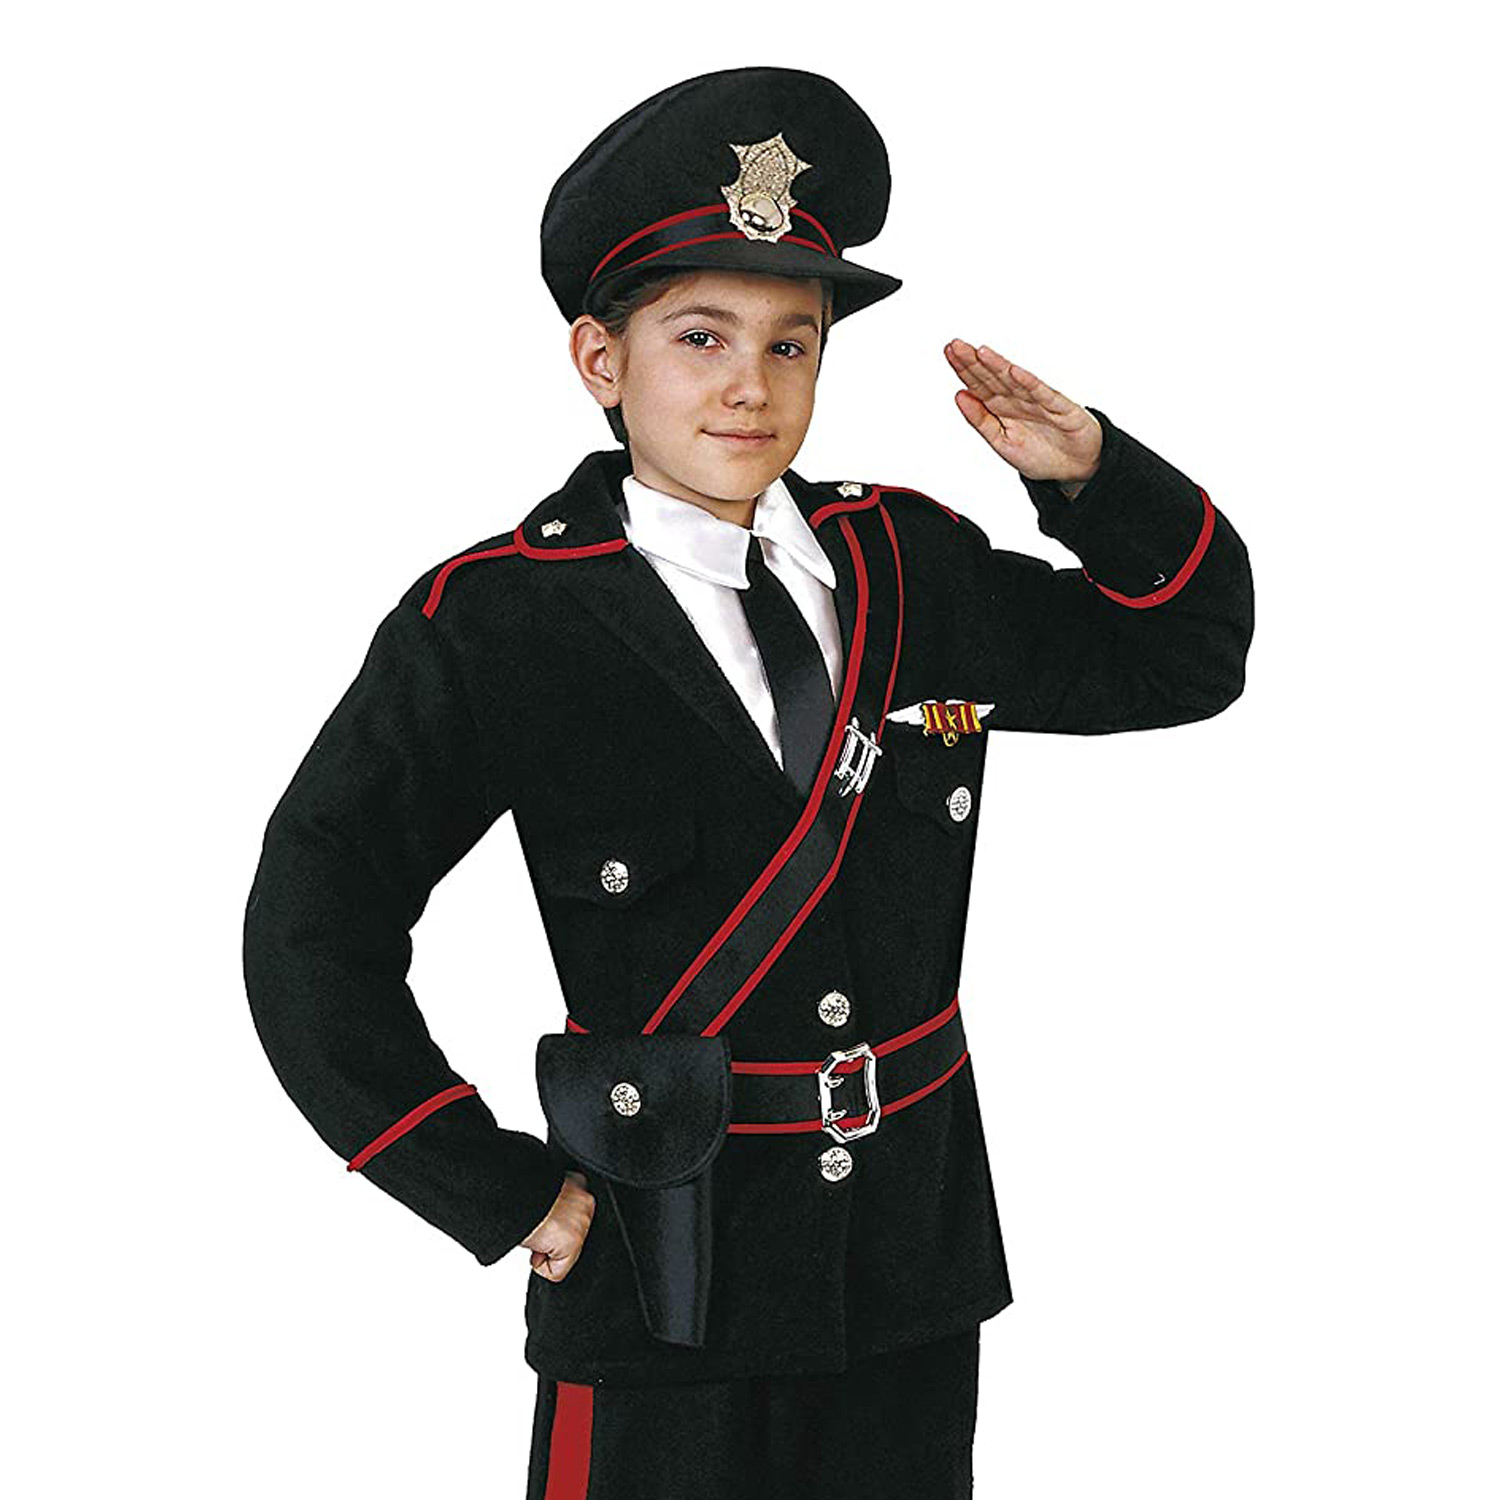 Original Carabinieri Carabinieri Carabinieri Costume Hello 27075